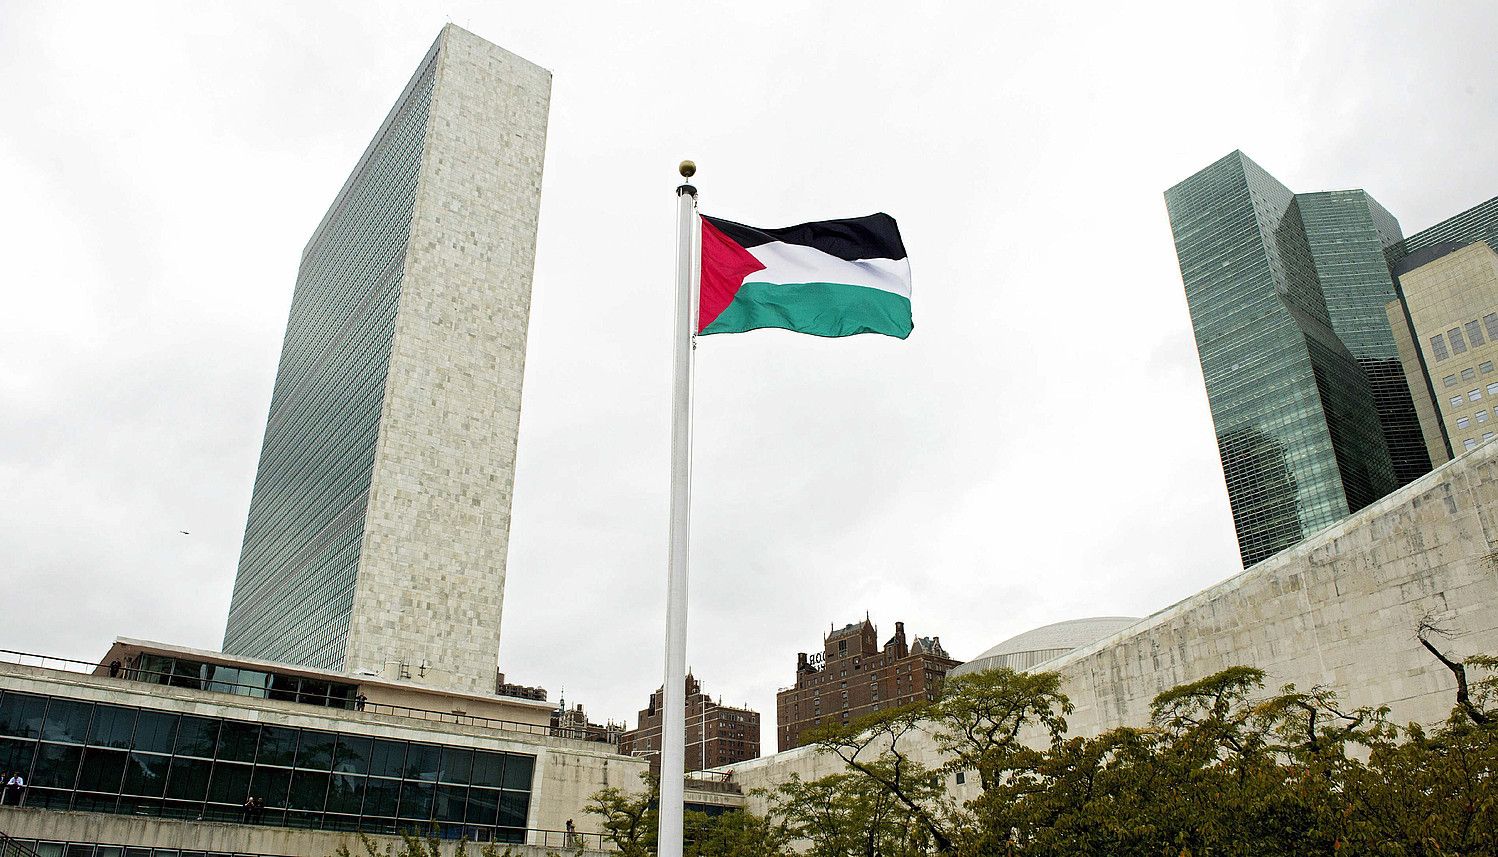 Palestinako kaleetan ospatu dute banderaren igotzea. Irudian, bandera, atzo, NBEko egoitza aurrean. JUSTIN LANE / EFE.